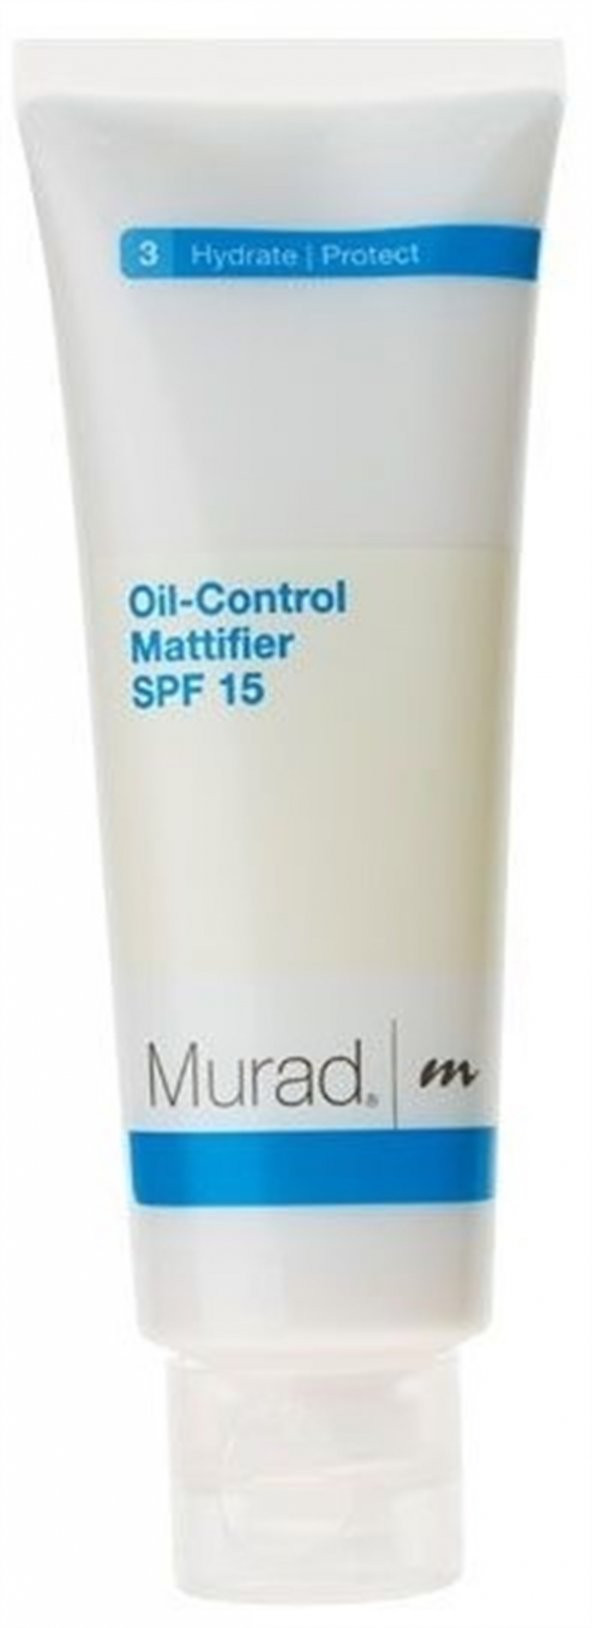 Murad Oil-Control Mattifier Nemlendirici Spf 15 Yağlanmaya Karşı Parlamayı Engelleyen 50 Ml